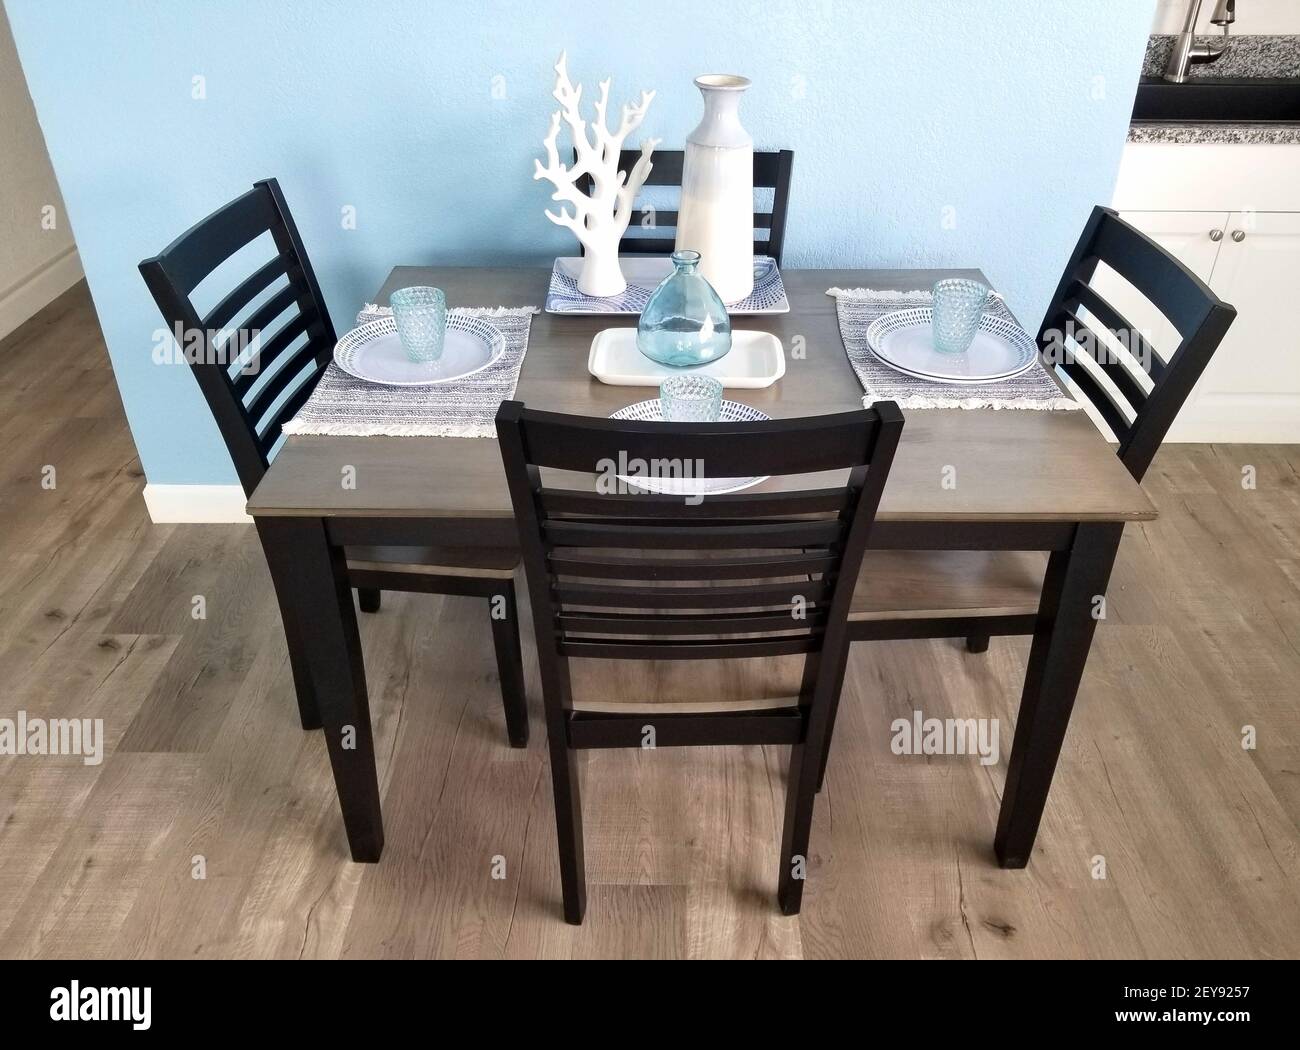 Un piccolo tavolo da cucina con quattro sedie e decorazioni sulla